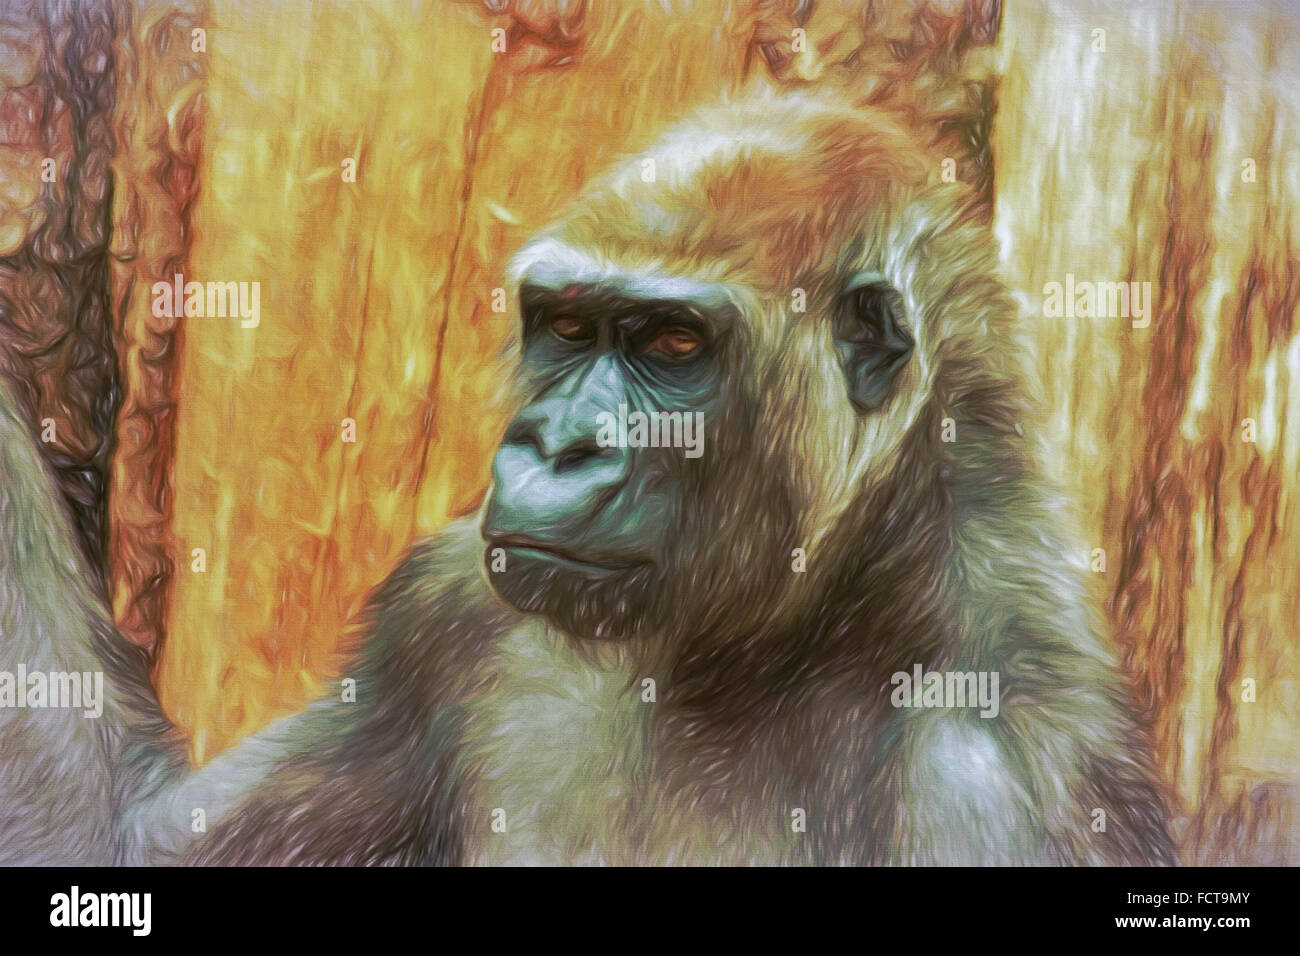 Portrait de gorille, mail, la peinture au style impressionniste. Créé manuellement à l'aide de diverses techniques numériques. Banque D'Images